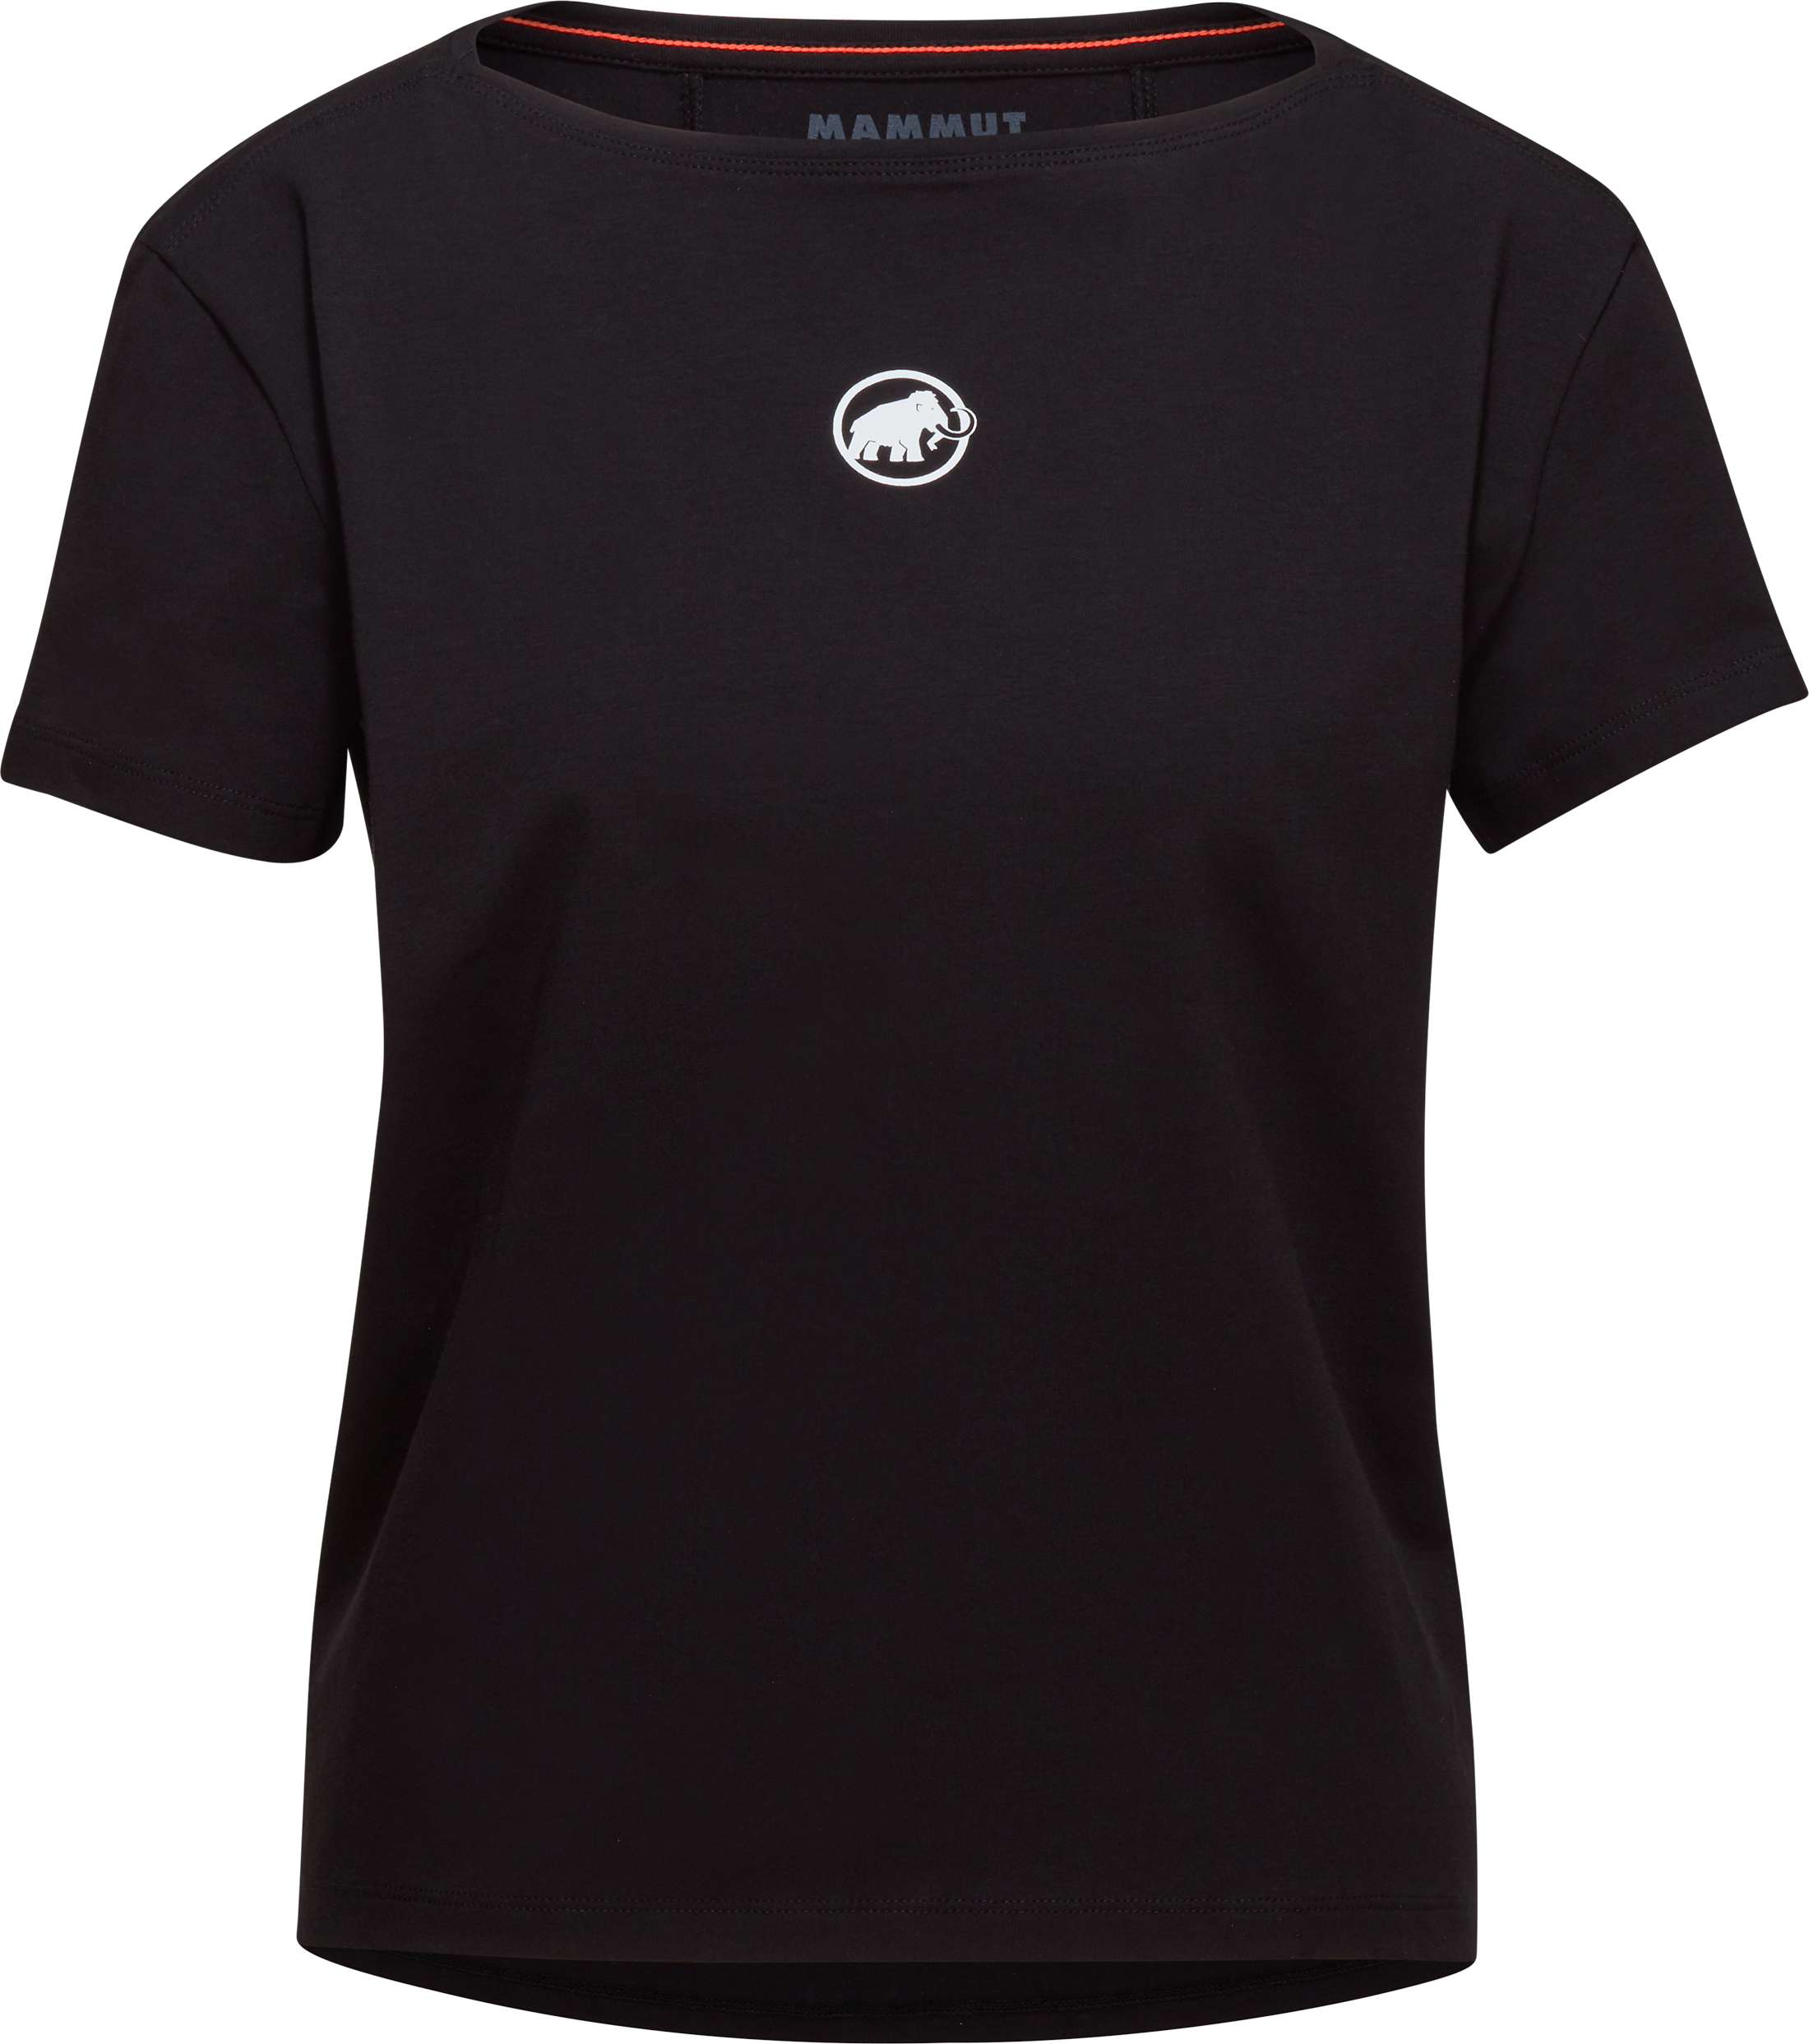 Mammut Women’s Seon T-Shirt Original black